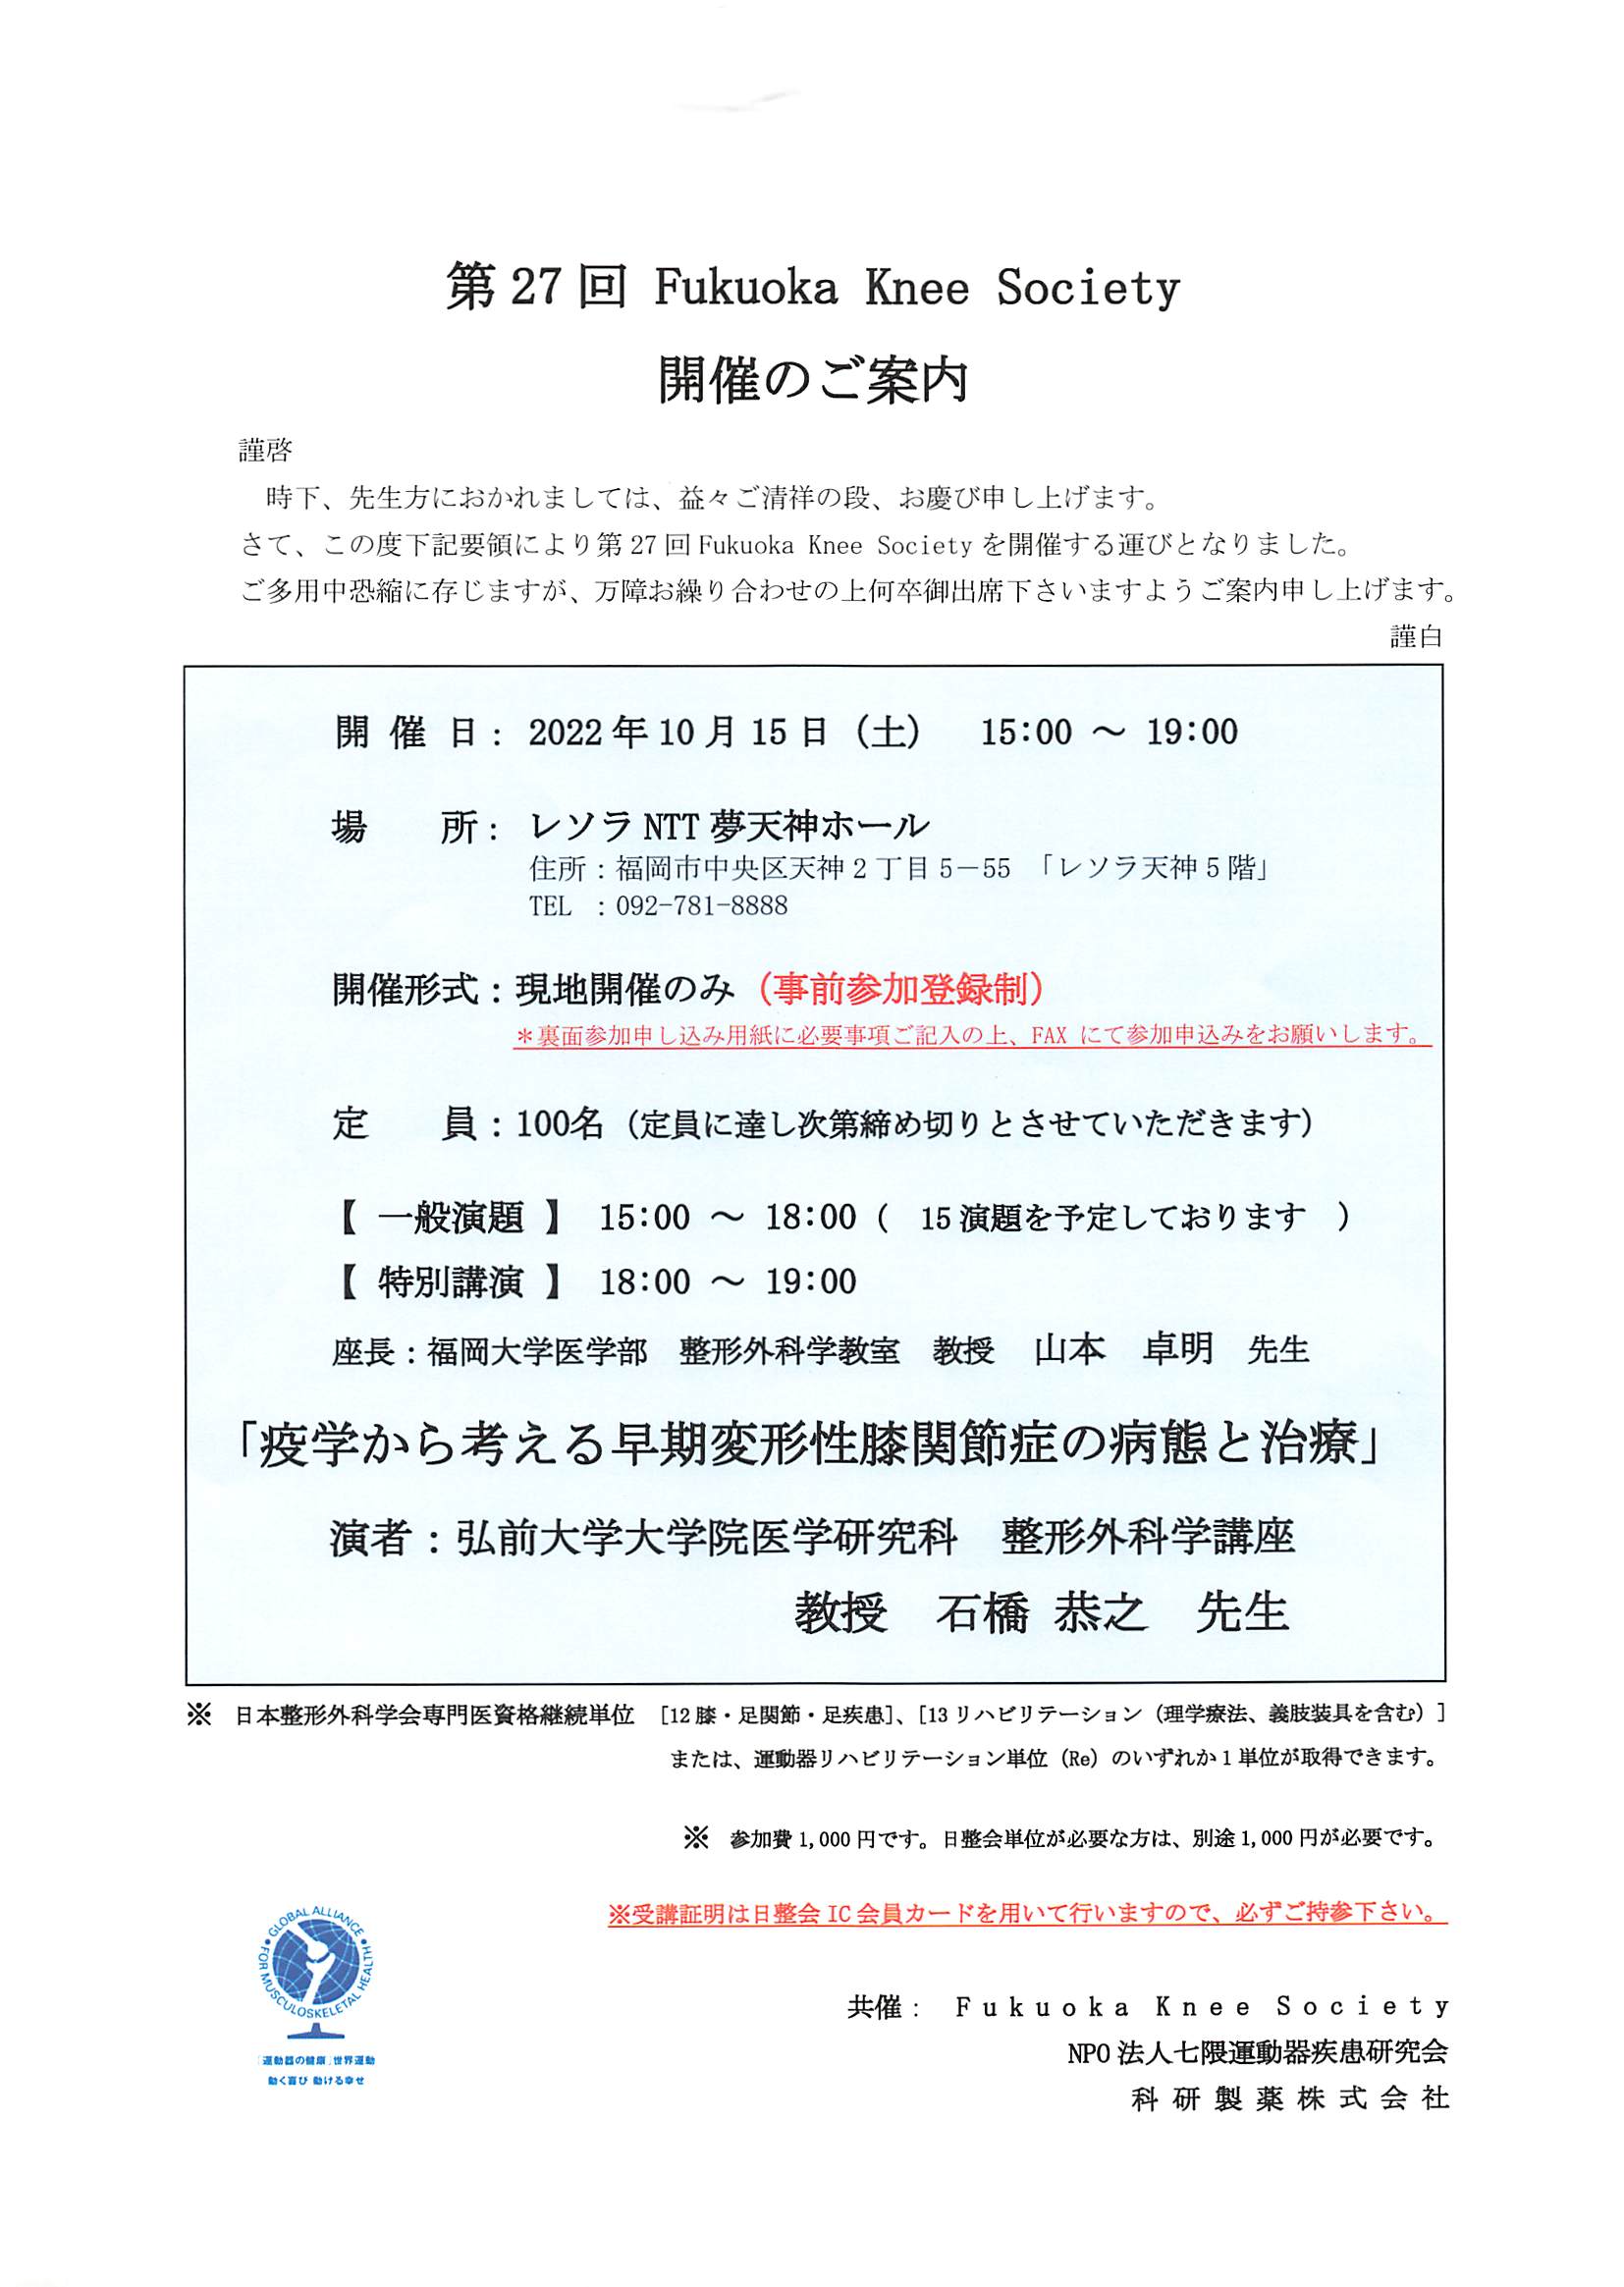 2022年10月15日(土)「第27回 Fukuoka Knee Society」が開催されます。